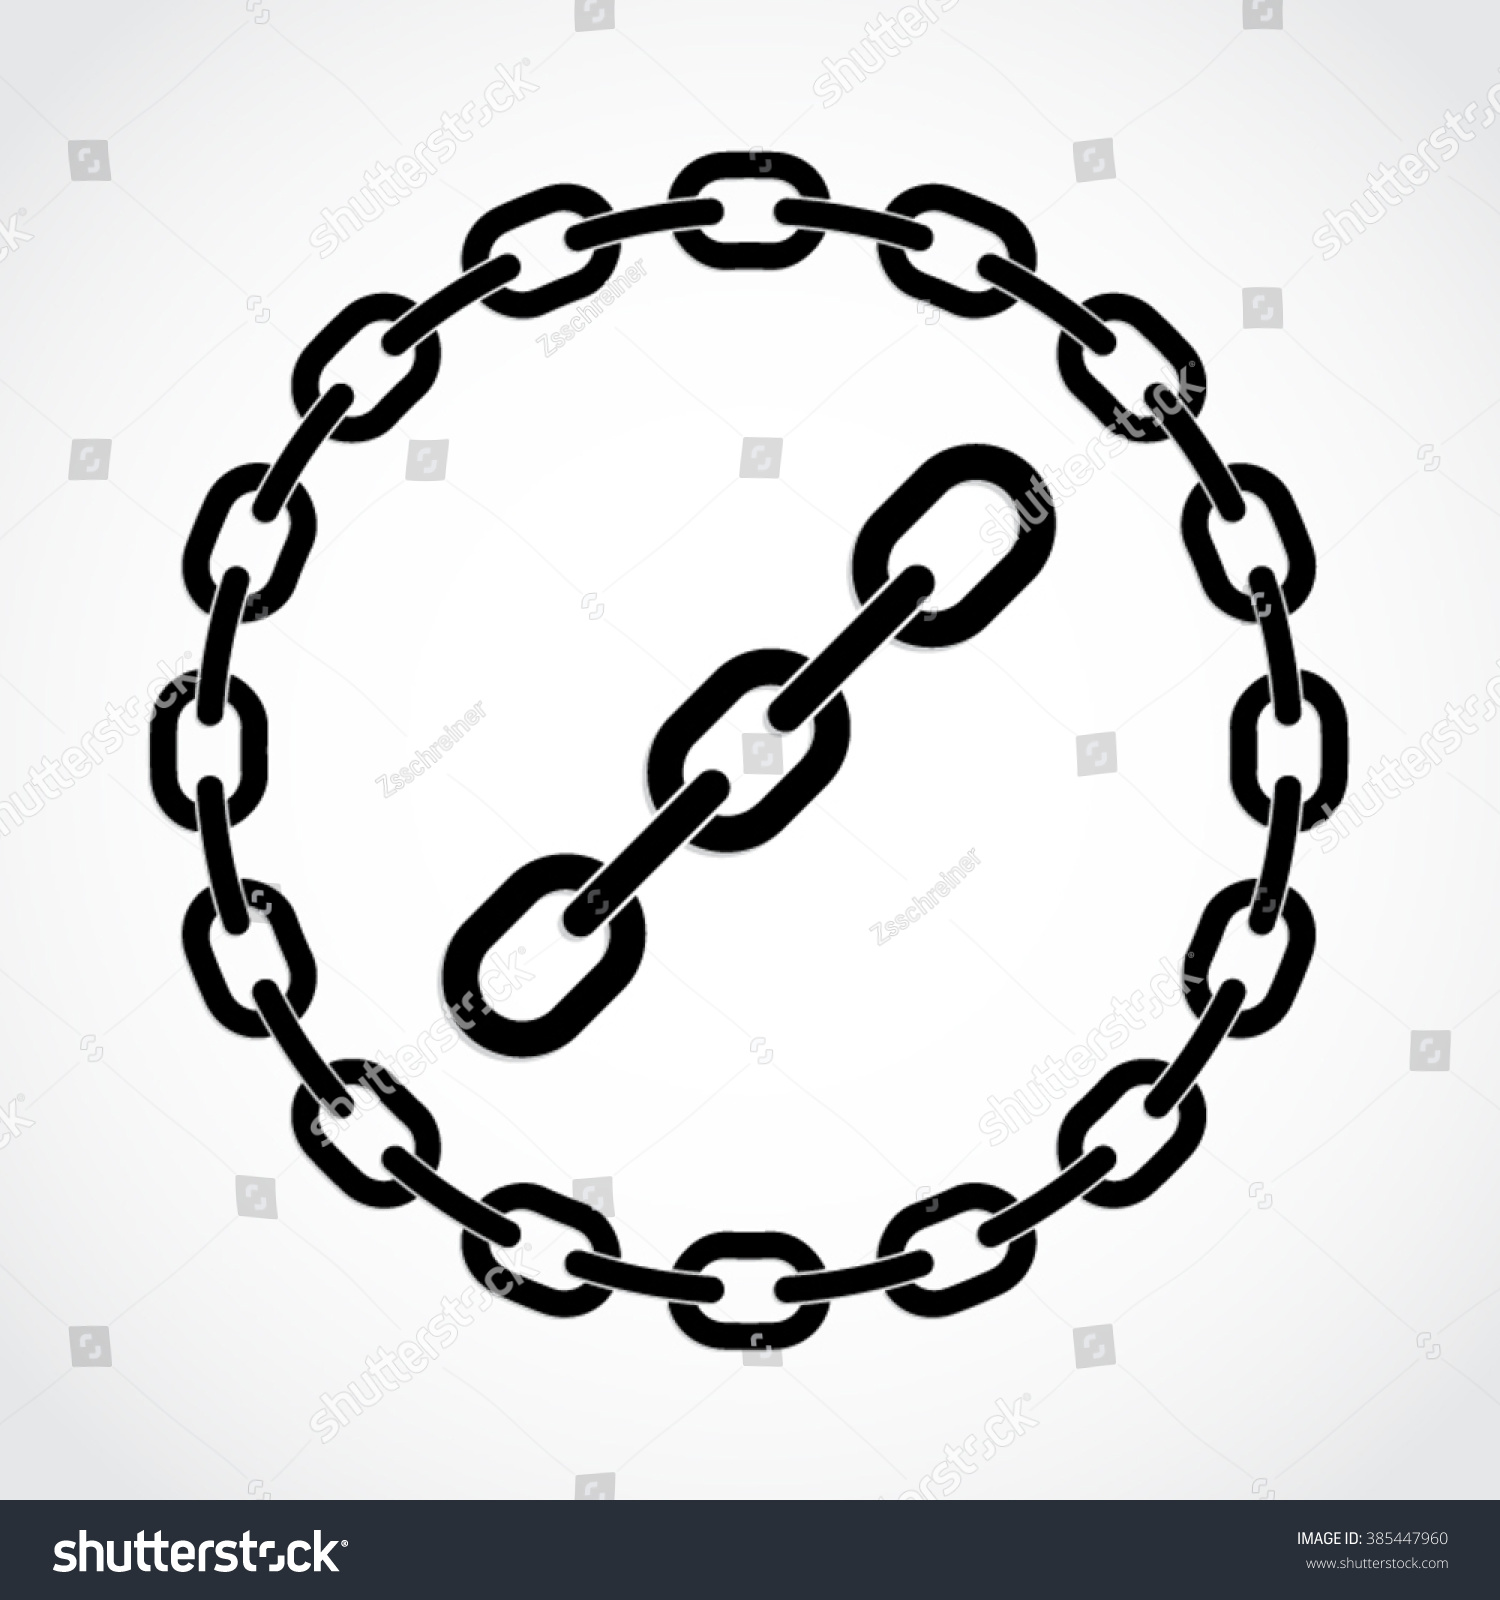 circle chain clipart - photo #20